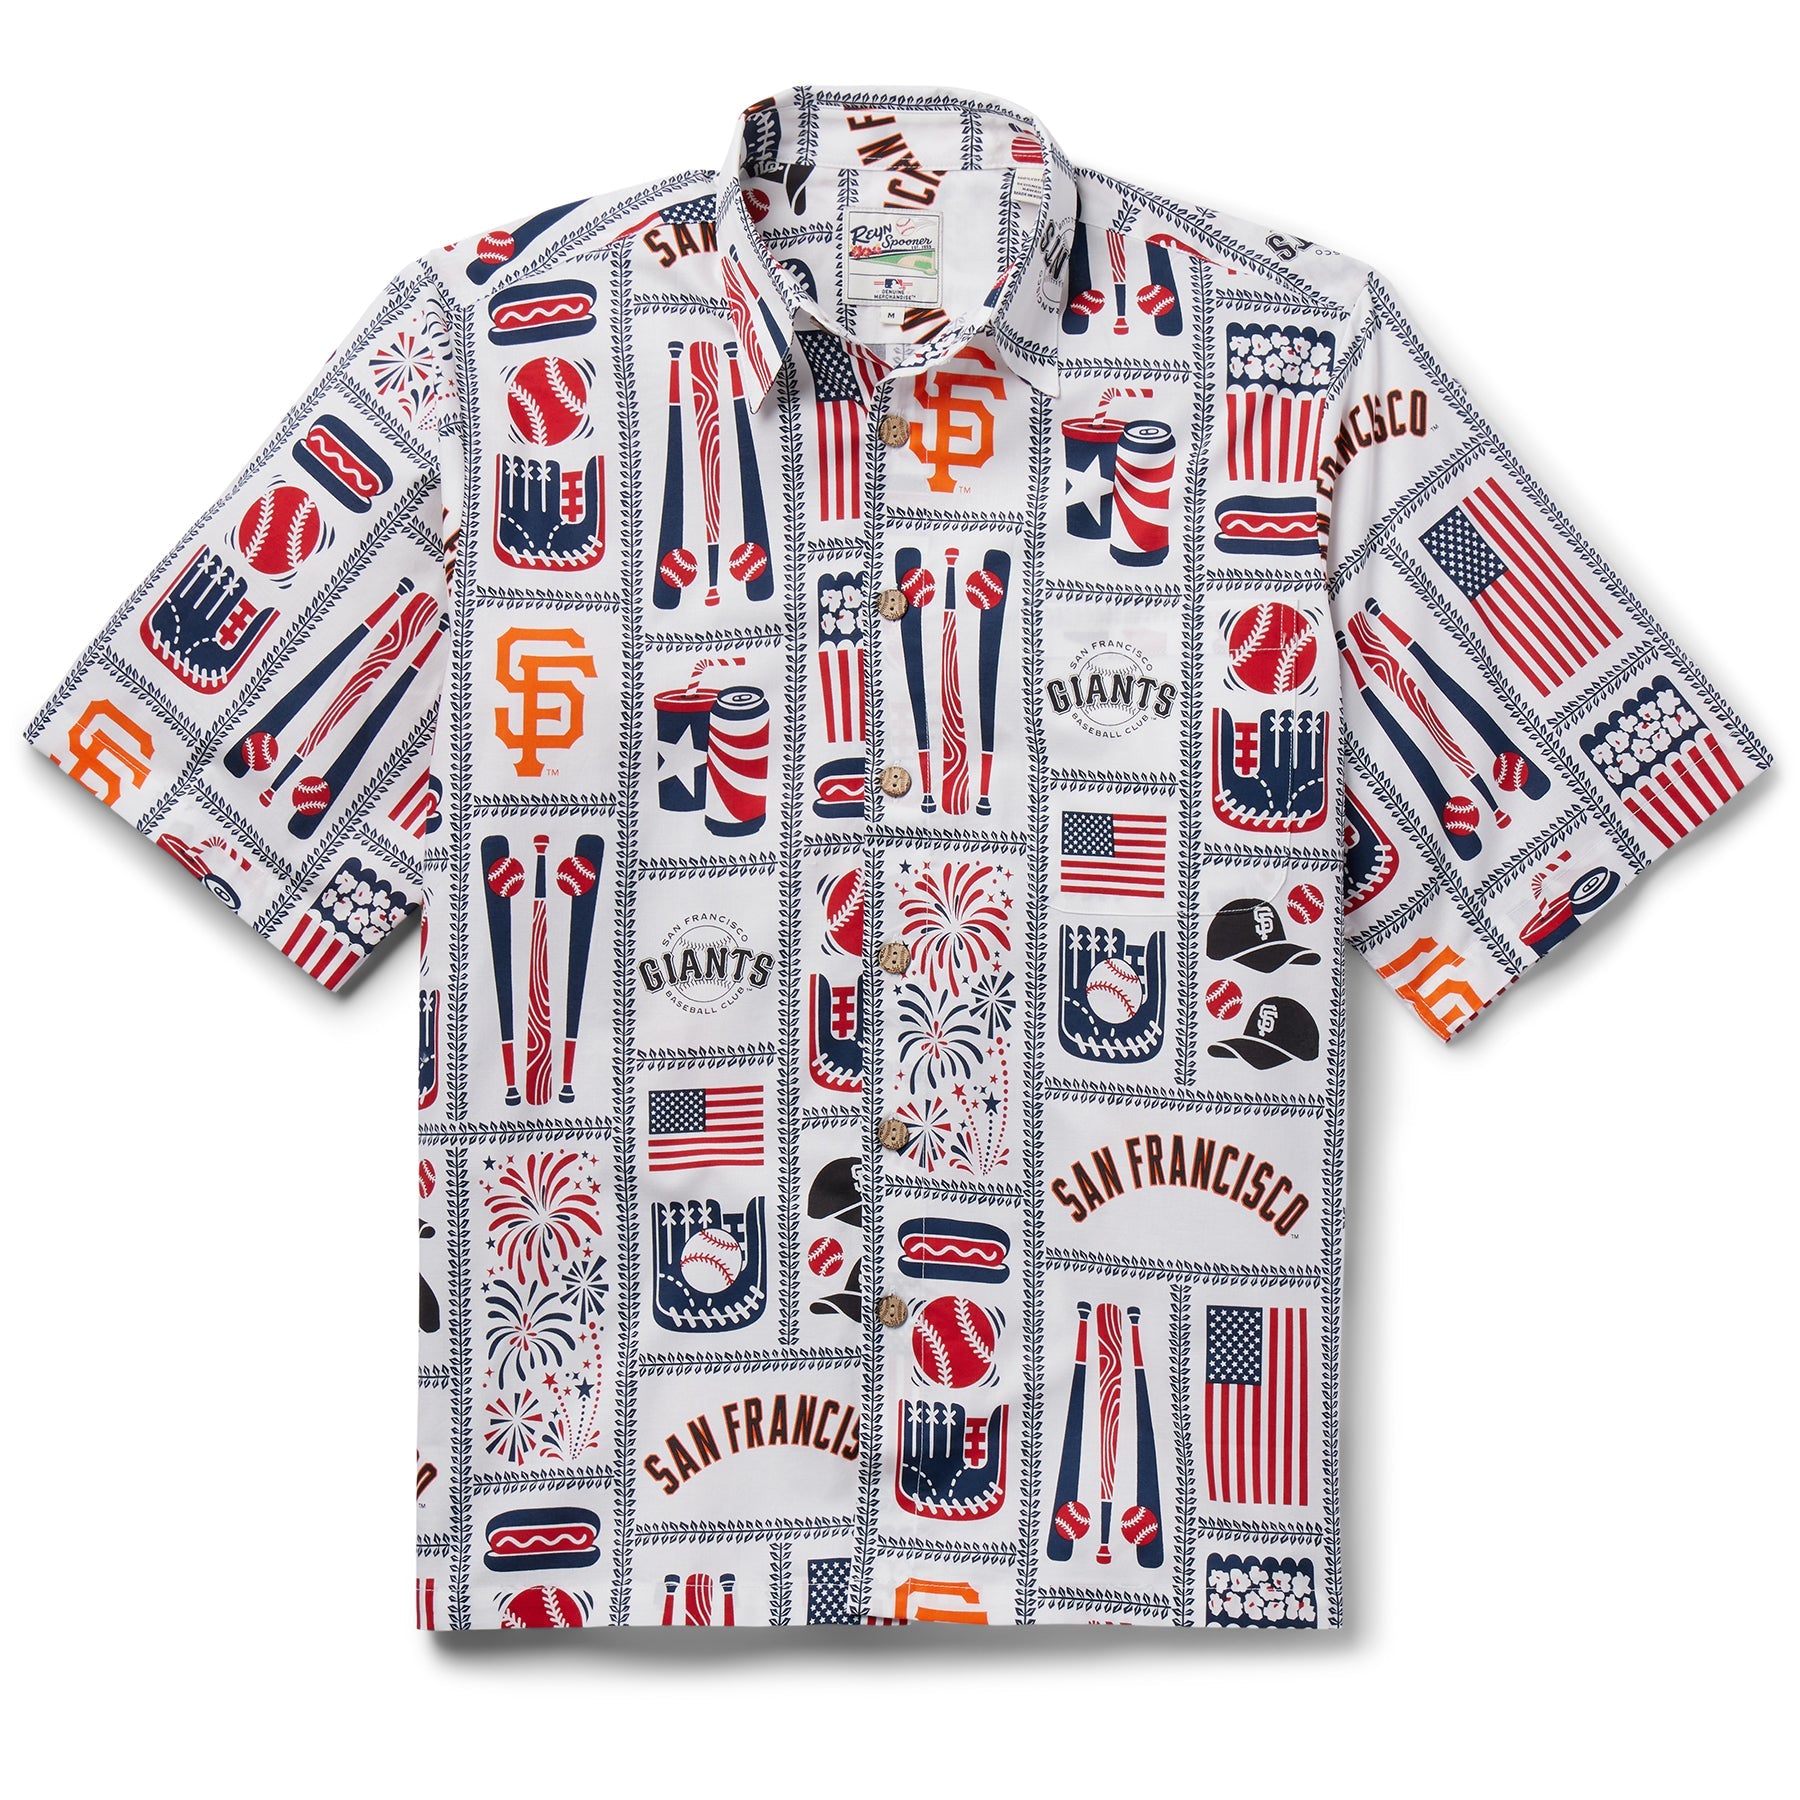 Chicago Cubs Reyn Spooner Scenic Hawaiian Shirt in 2023